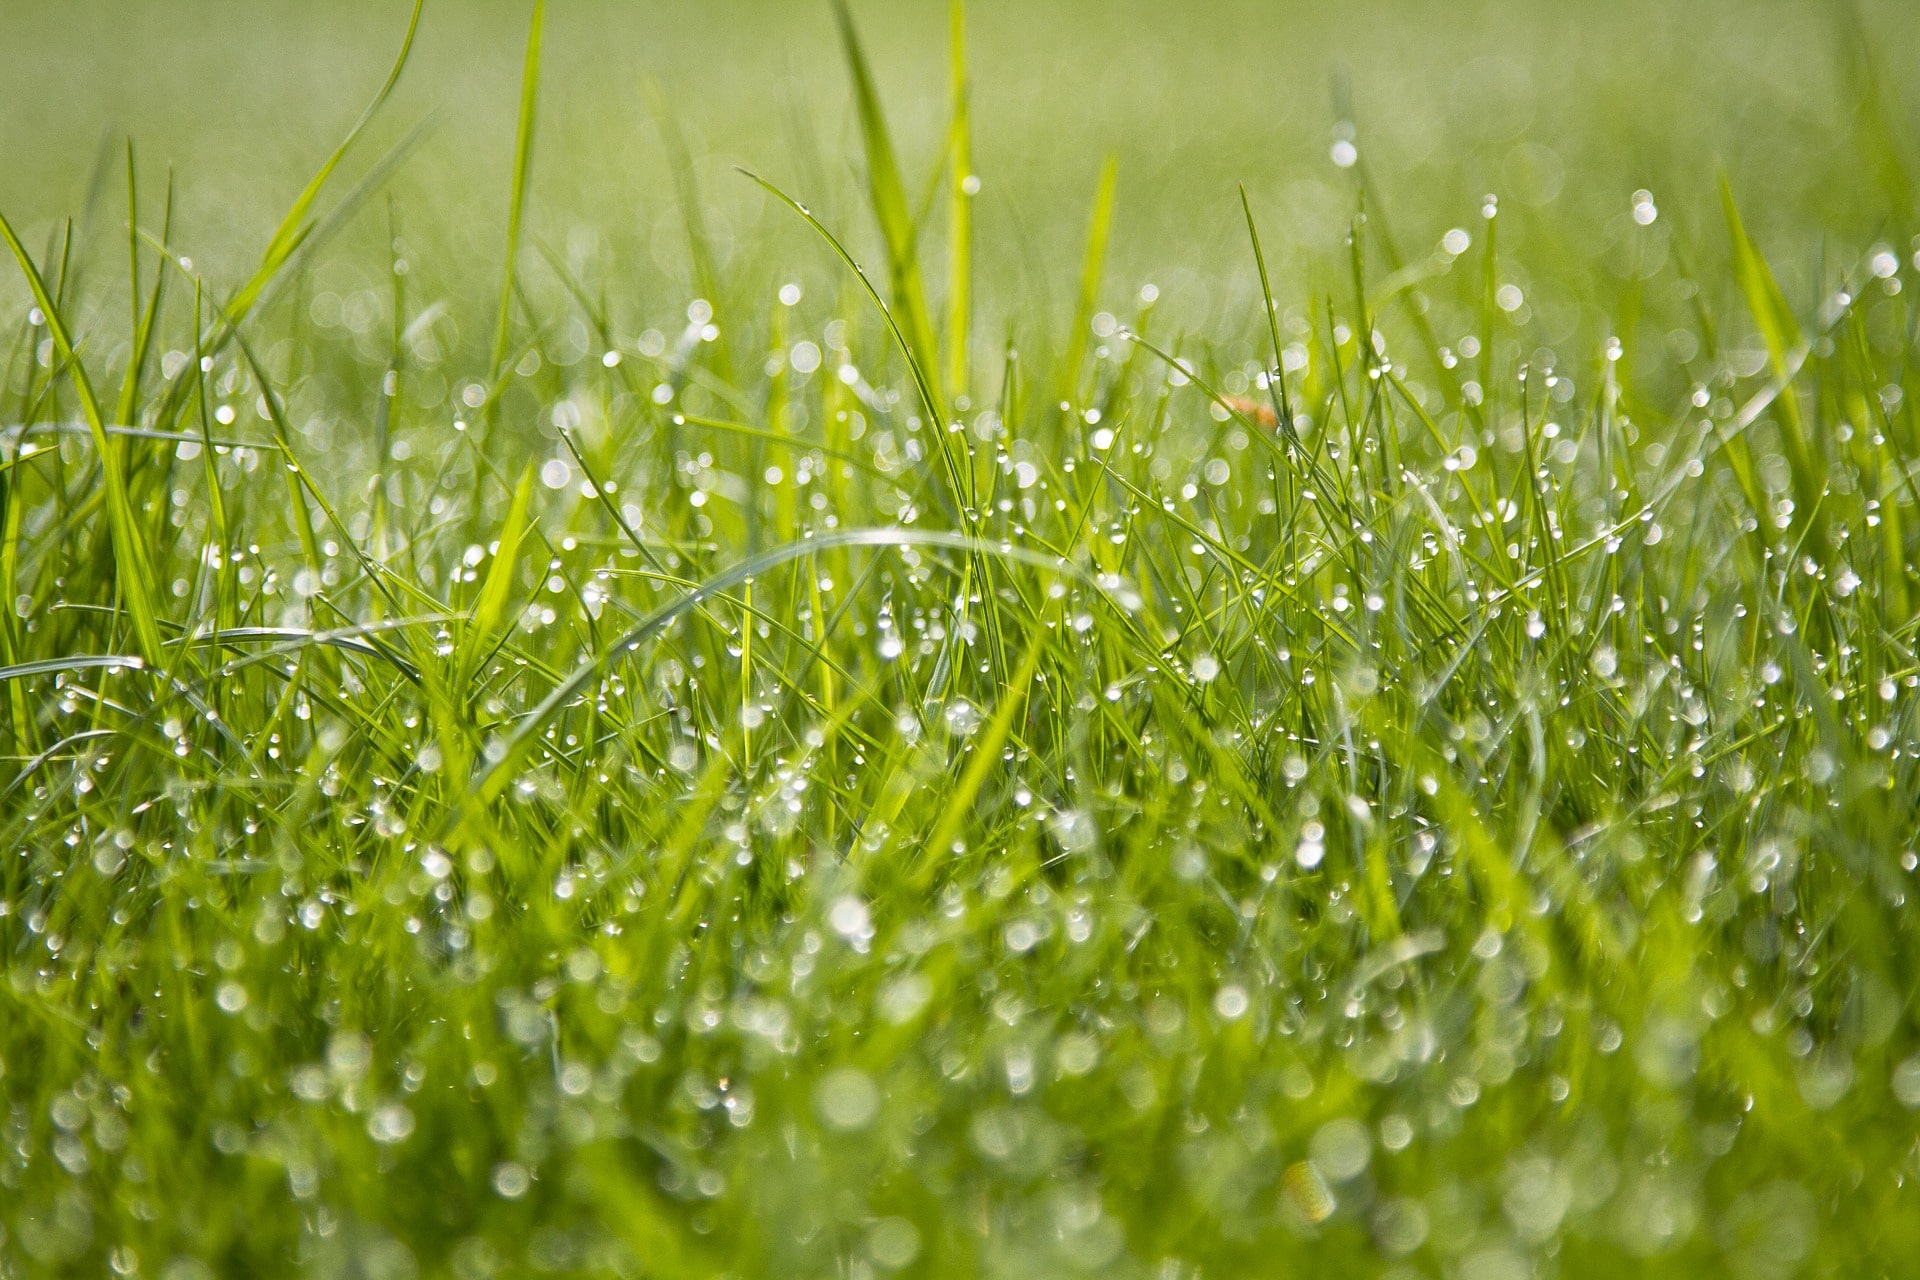 Wet green grass.